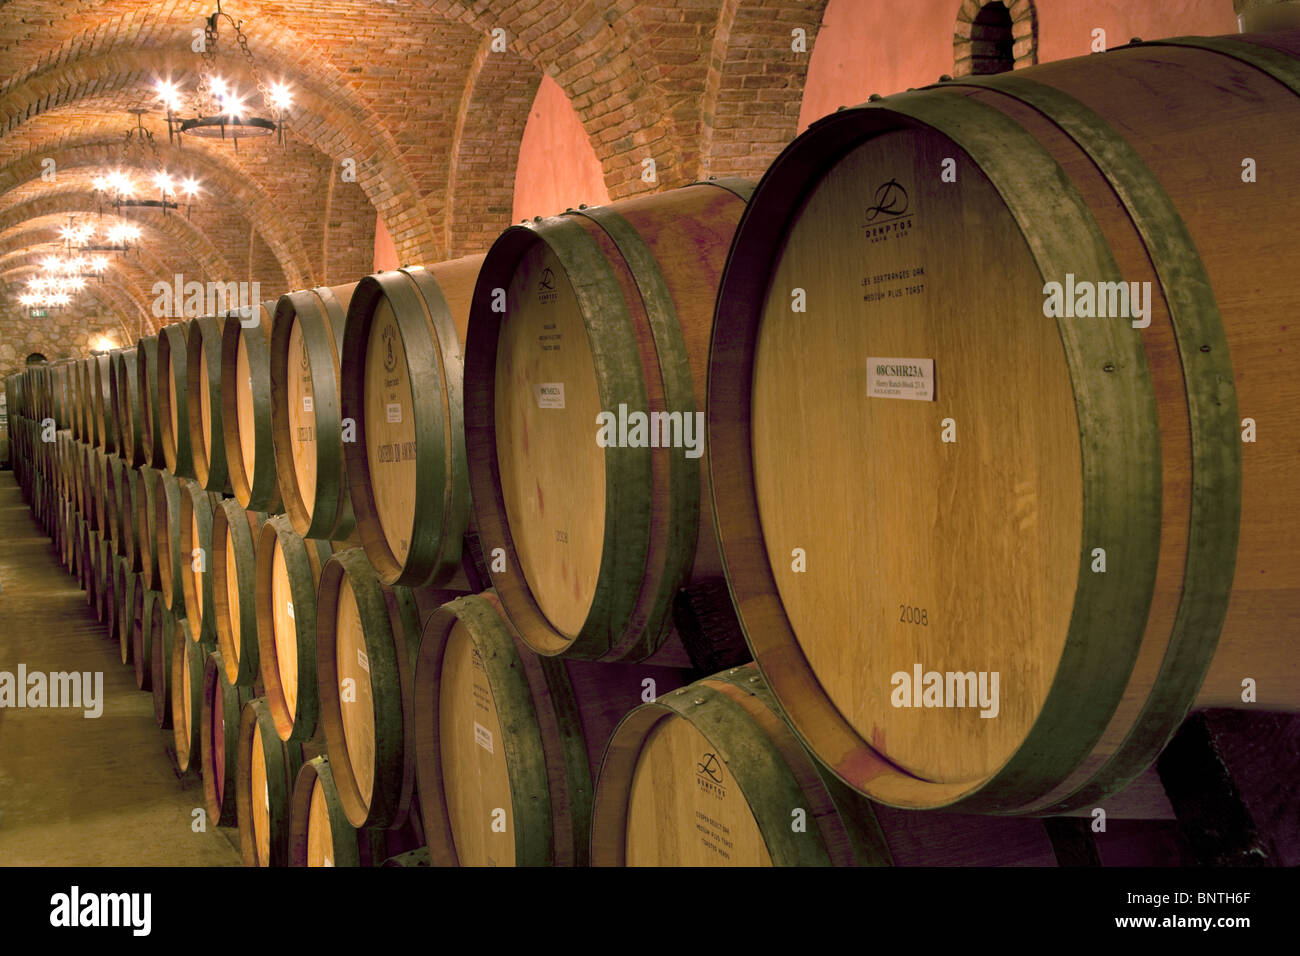 Wine aging in barrels in cellar. Castello di Amorosa. Napa Valley, California. Property released Stock Photo